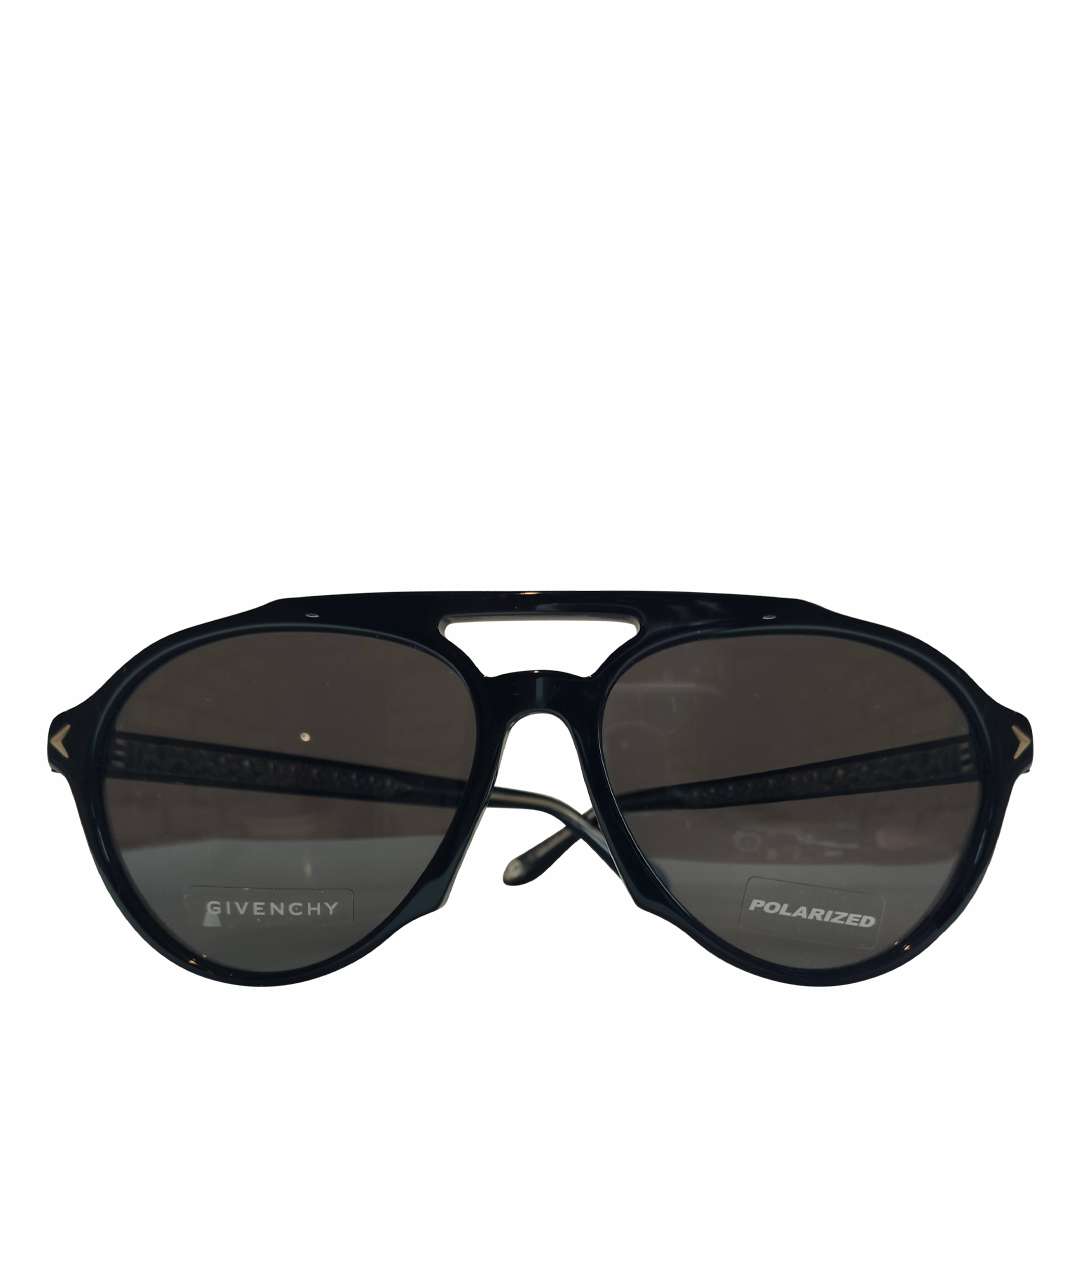 GIVENCHY Черные пластиковые солнцезащитные очки, фото 1